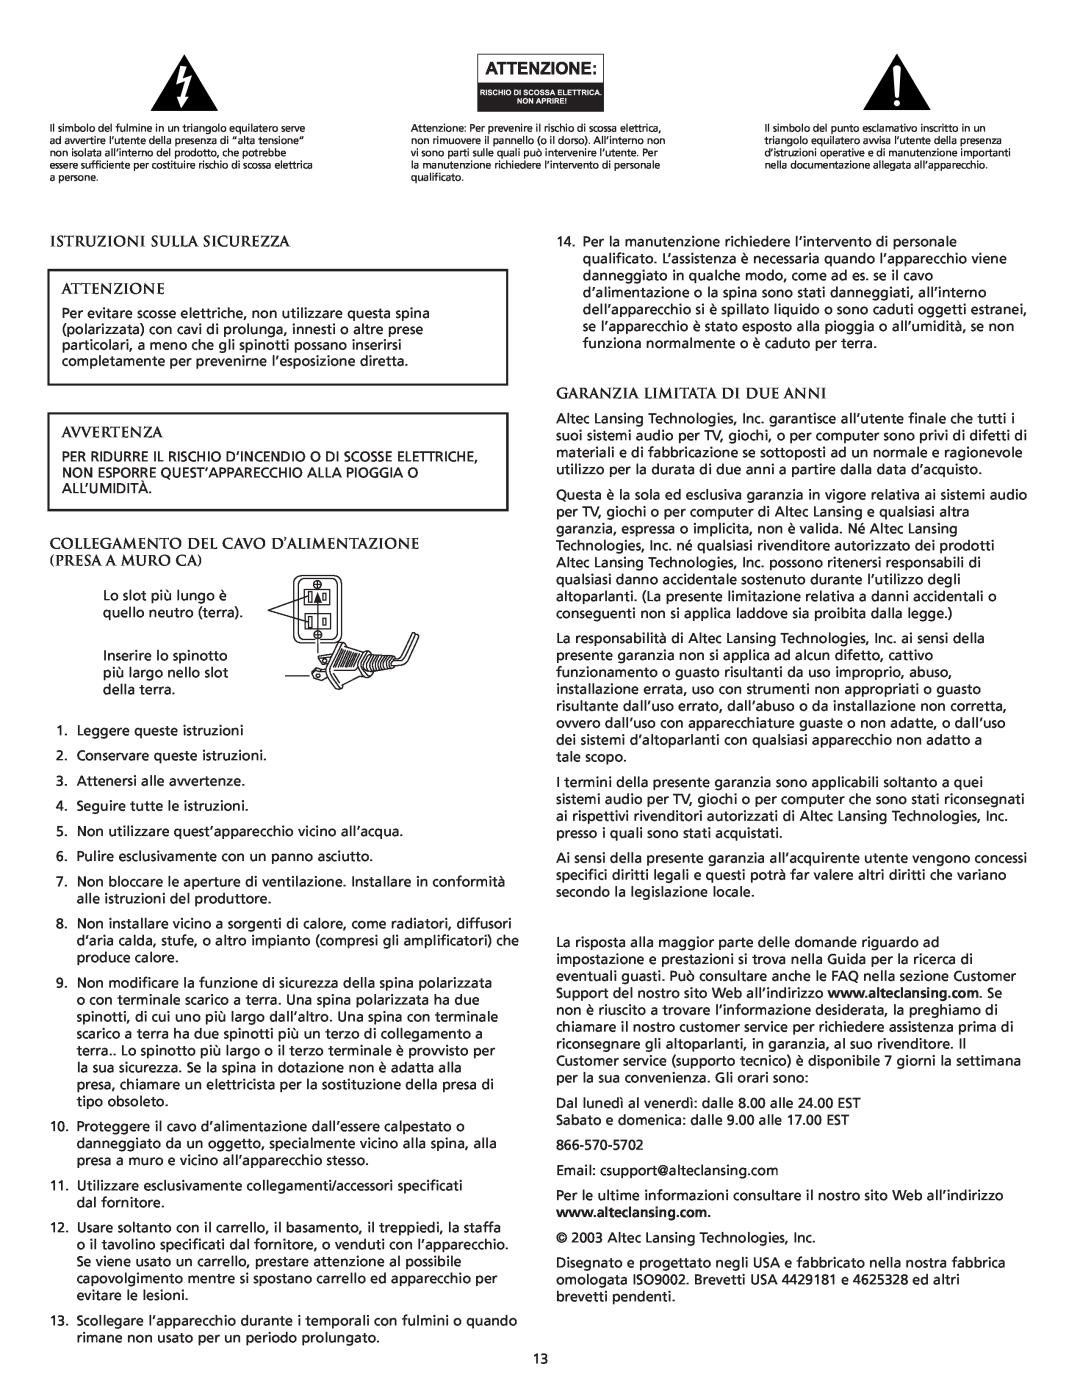 Altec Lansing VS4121 manual Istruzioni Sulla Sicurezza Attenzione, Avvertenza, Garanzia Limitata Di Due Anni 